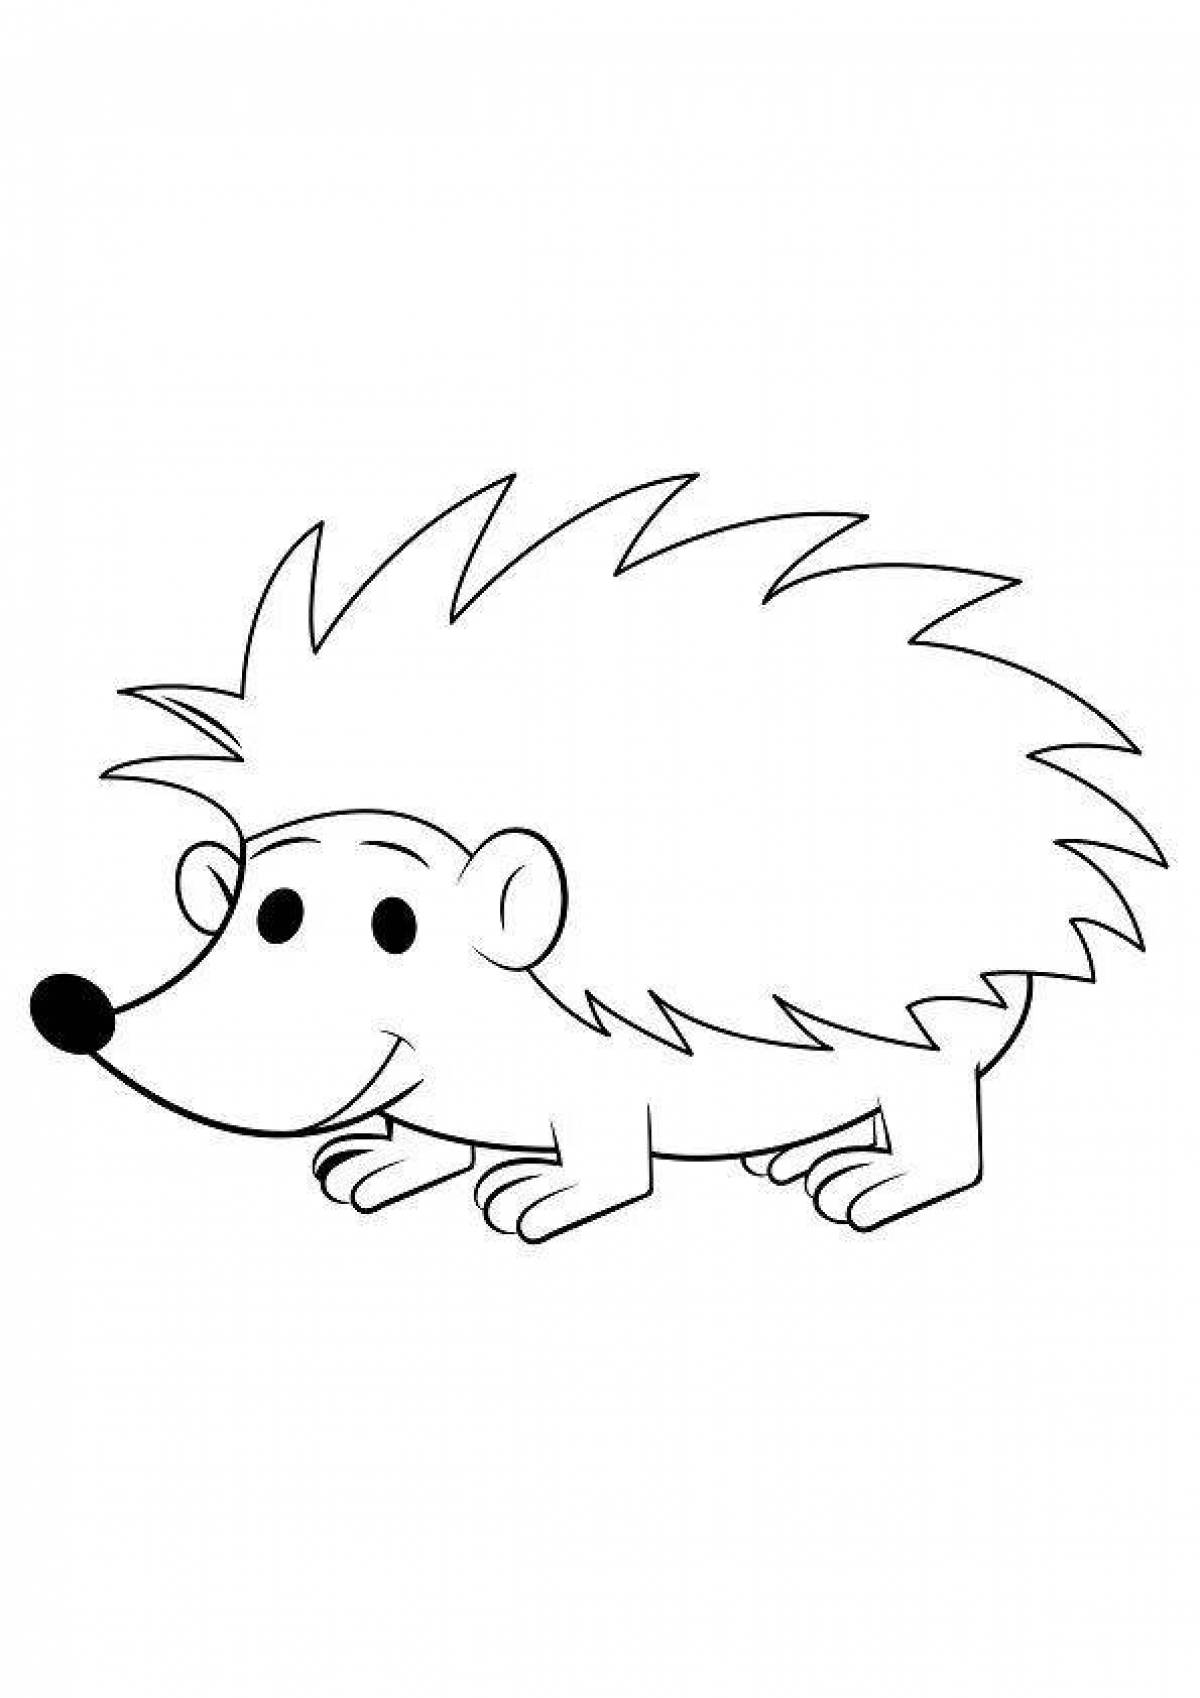 Fancy coloring hedgehog for kids